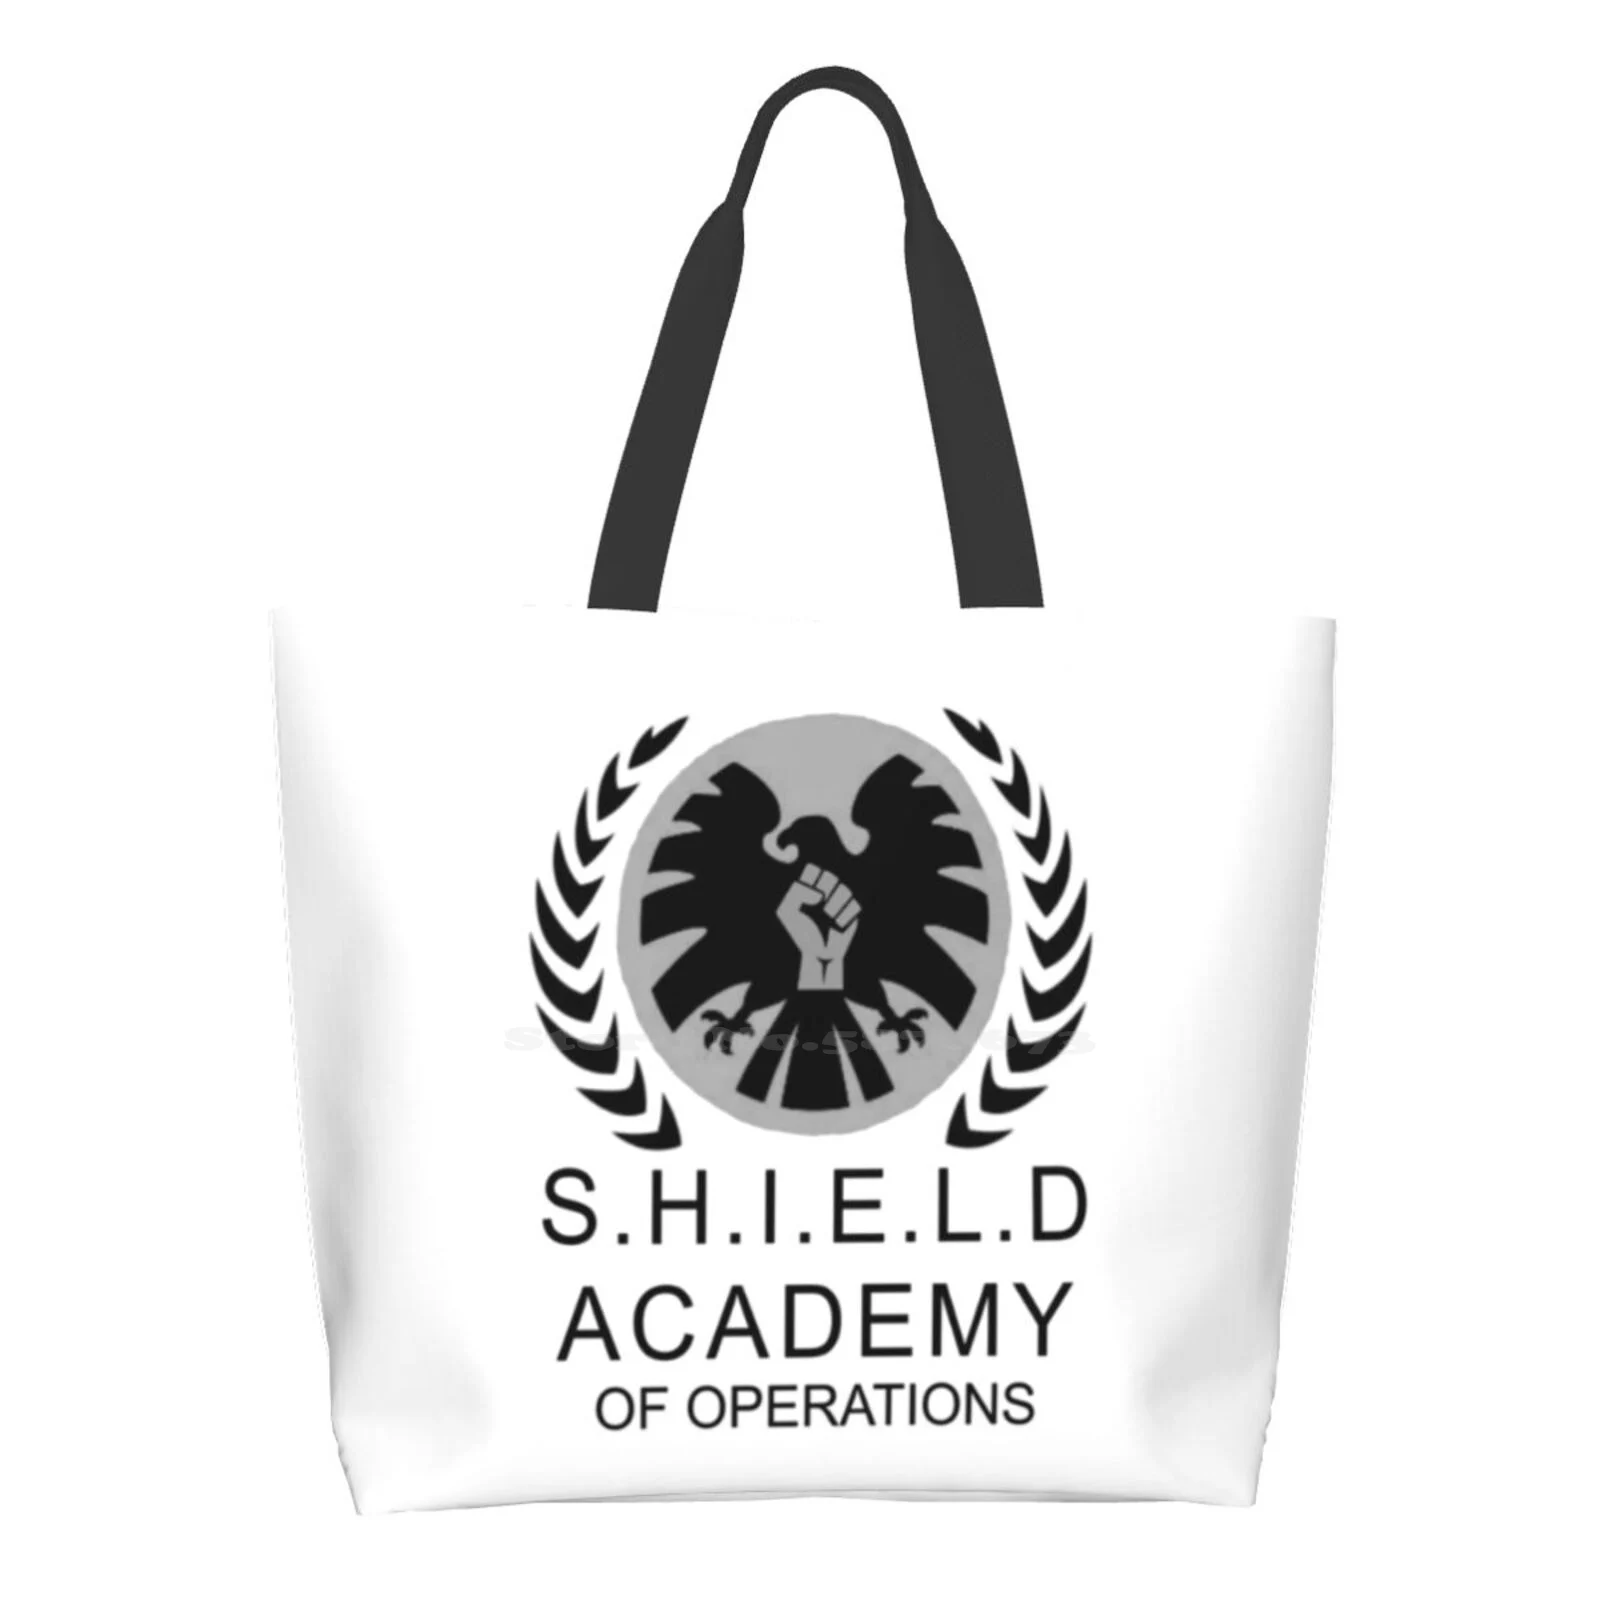 

Многоразовые хозяйственные сумки-тоуты Shield, мешки для хранения, агенты по операции, Фил кулсон